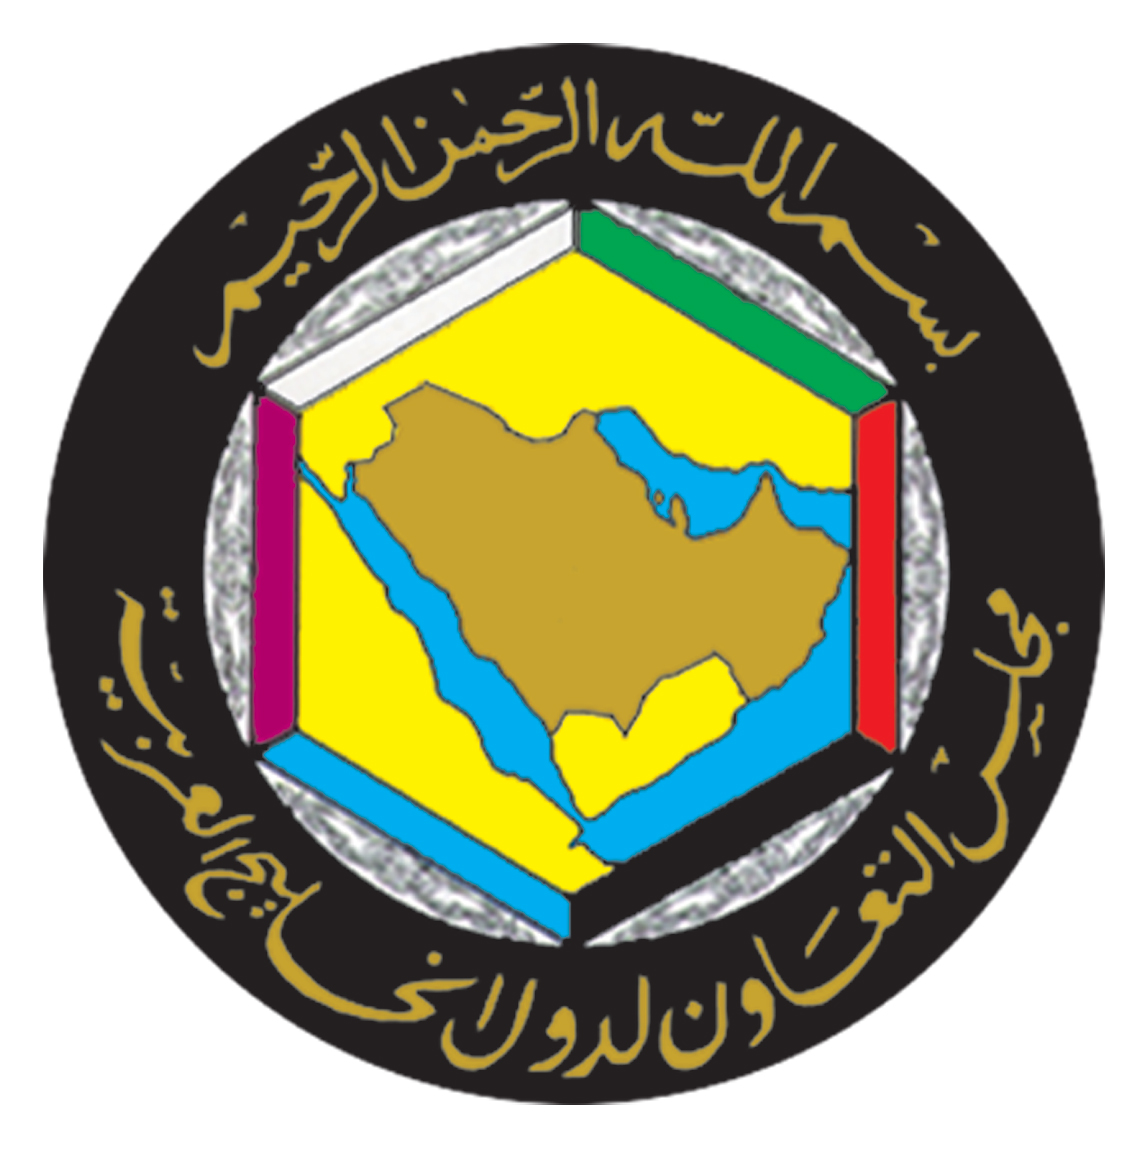 مجلس التعاون الخليجي.. 42 عاما على إنشاء أنجح تجربة تكاملية في المنطقة                                                                                                                                                                                    